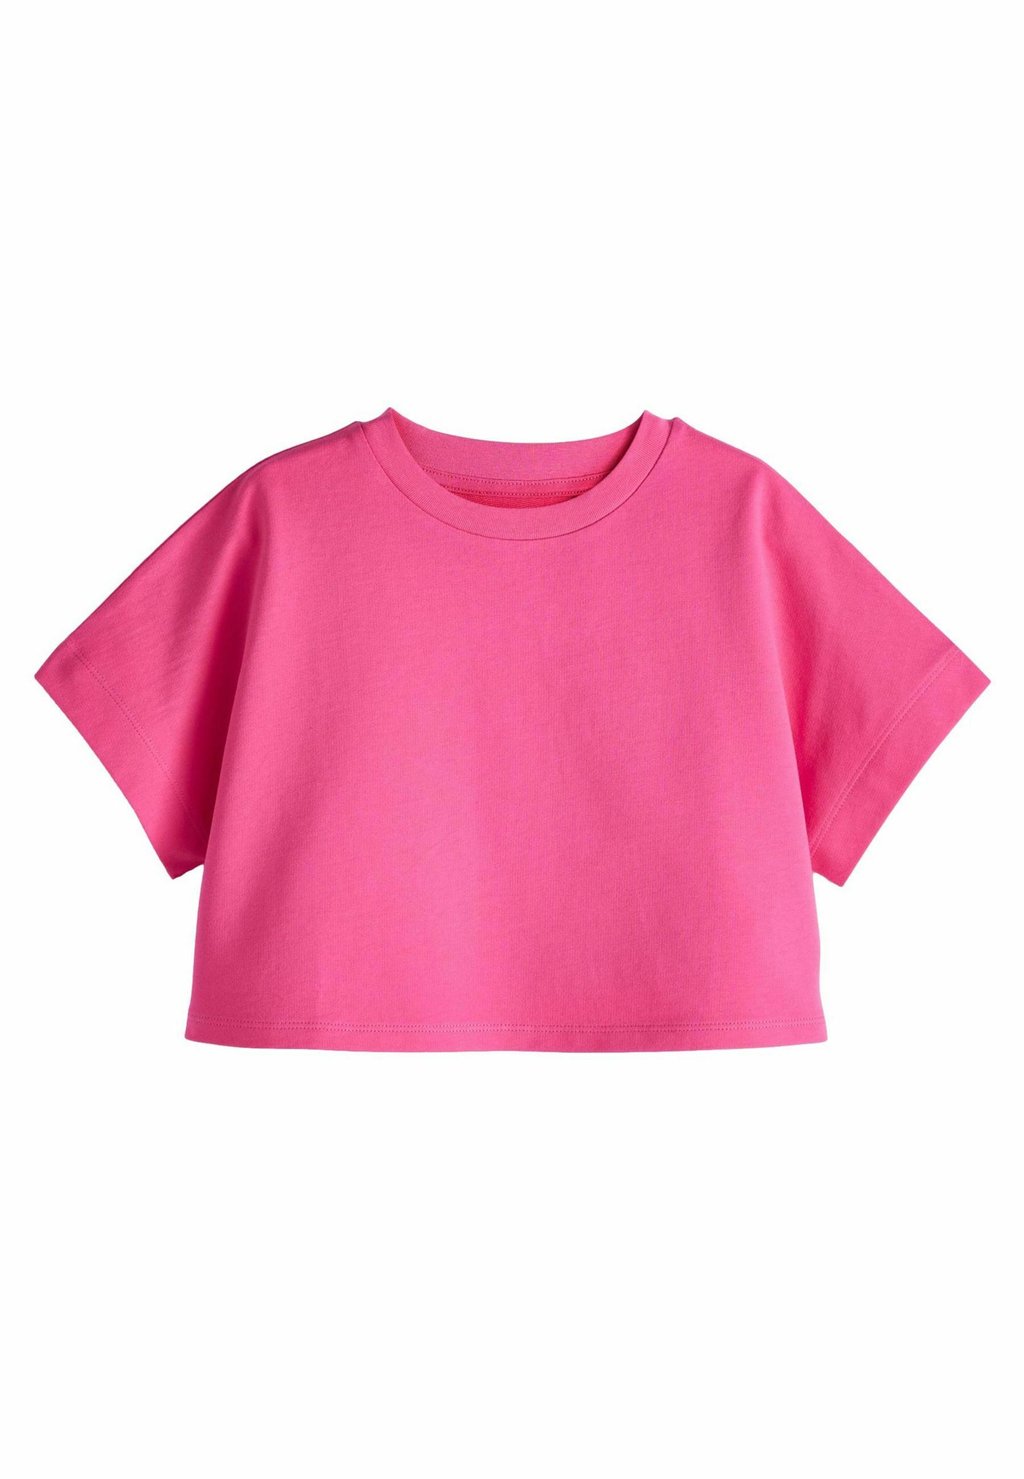 Базовая футболка REGULAR FIT Next, розовый